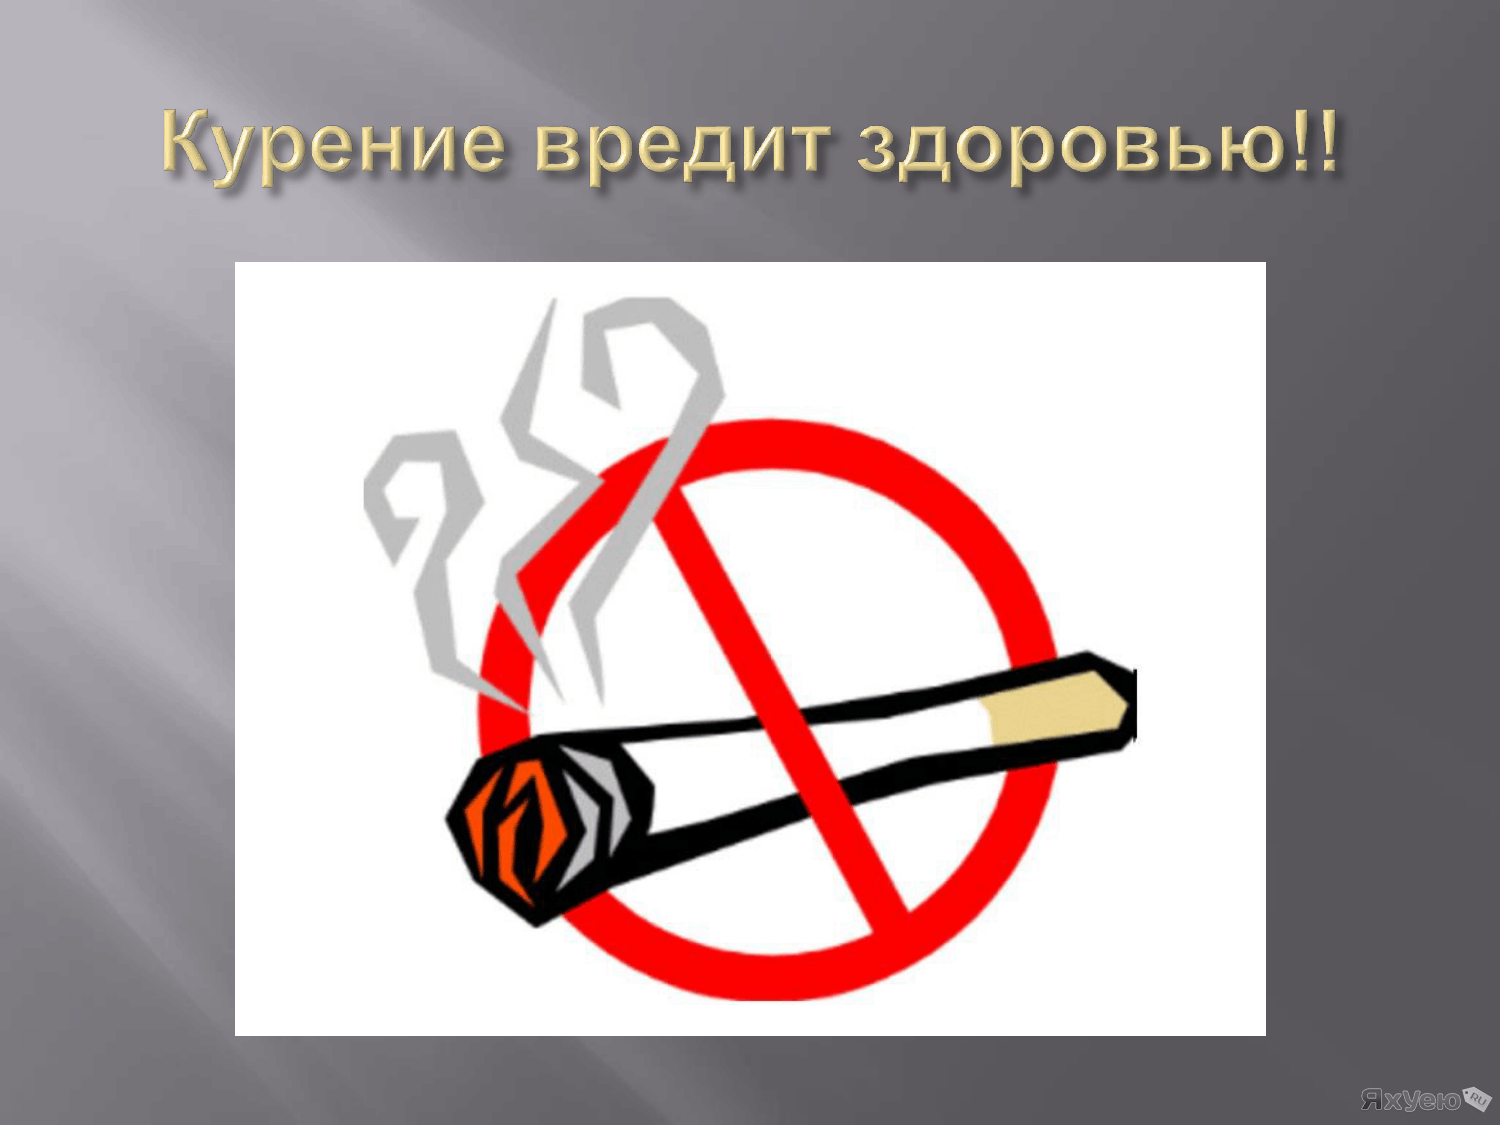 Сигарета вредно для человека. Курение вредит здоровью. Курить здоровью вредить. Парение вредит здоровью. Курить вредно для здоровья.